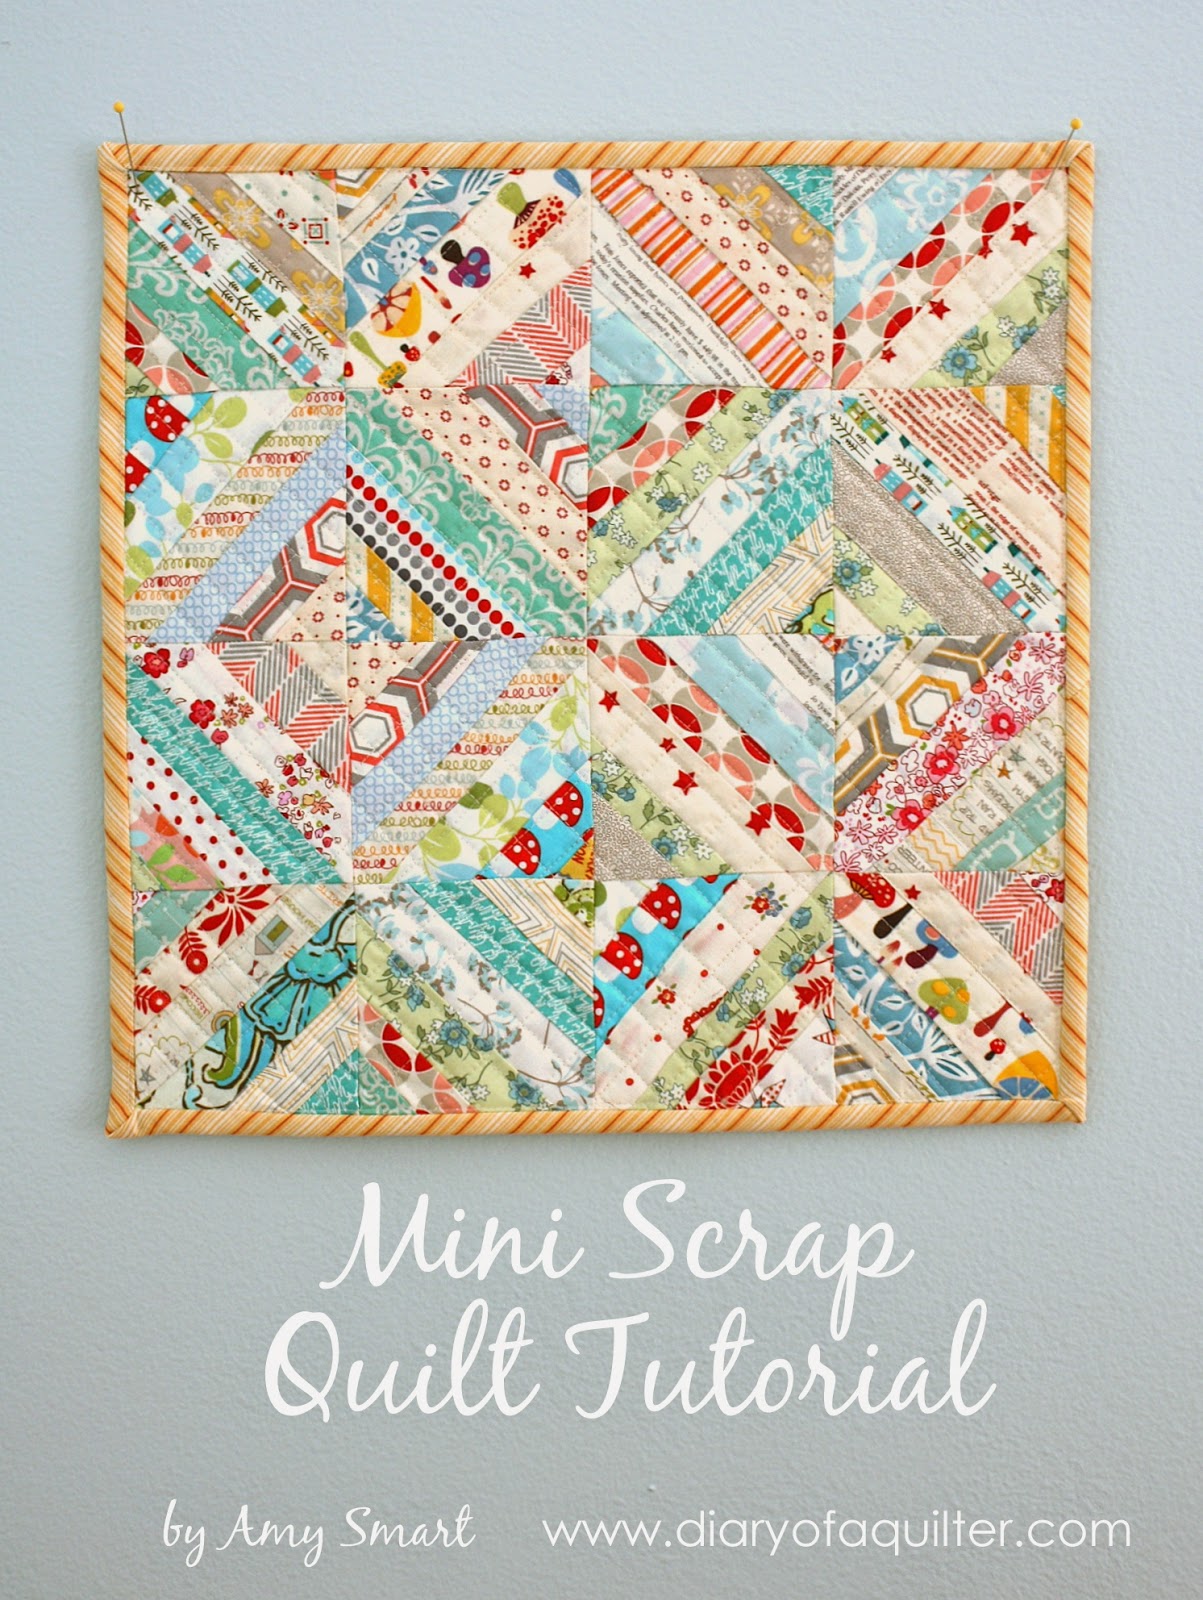 Many FREE mini quilt tutorials!